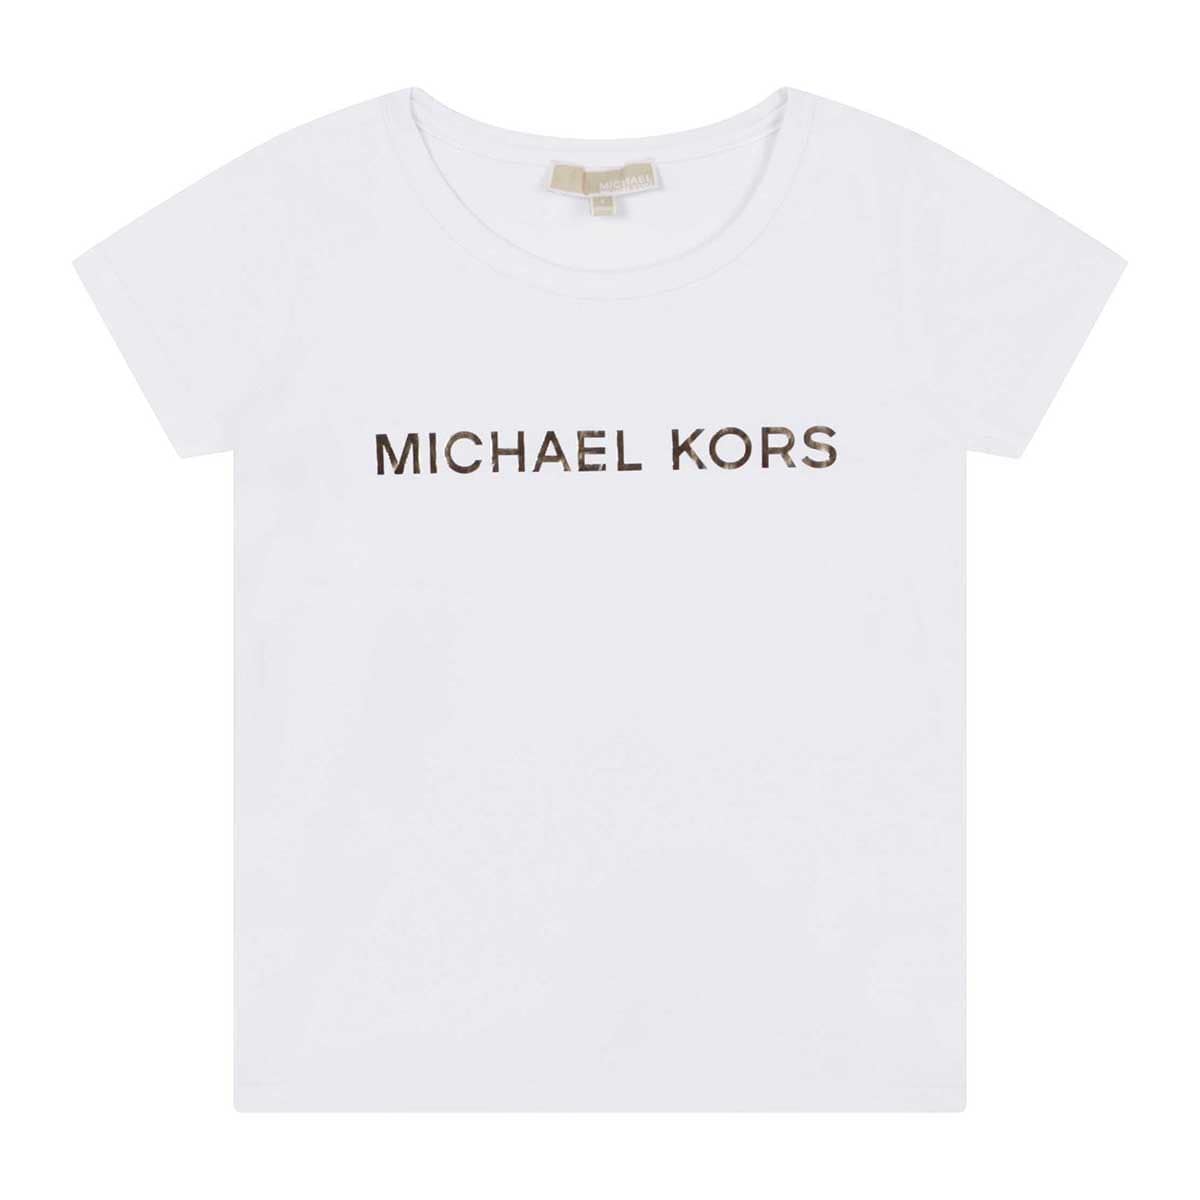 חולצת טי שרט MICHAEL KORS לוגו מטאלי לילדות